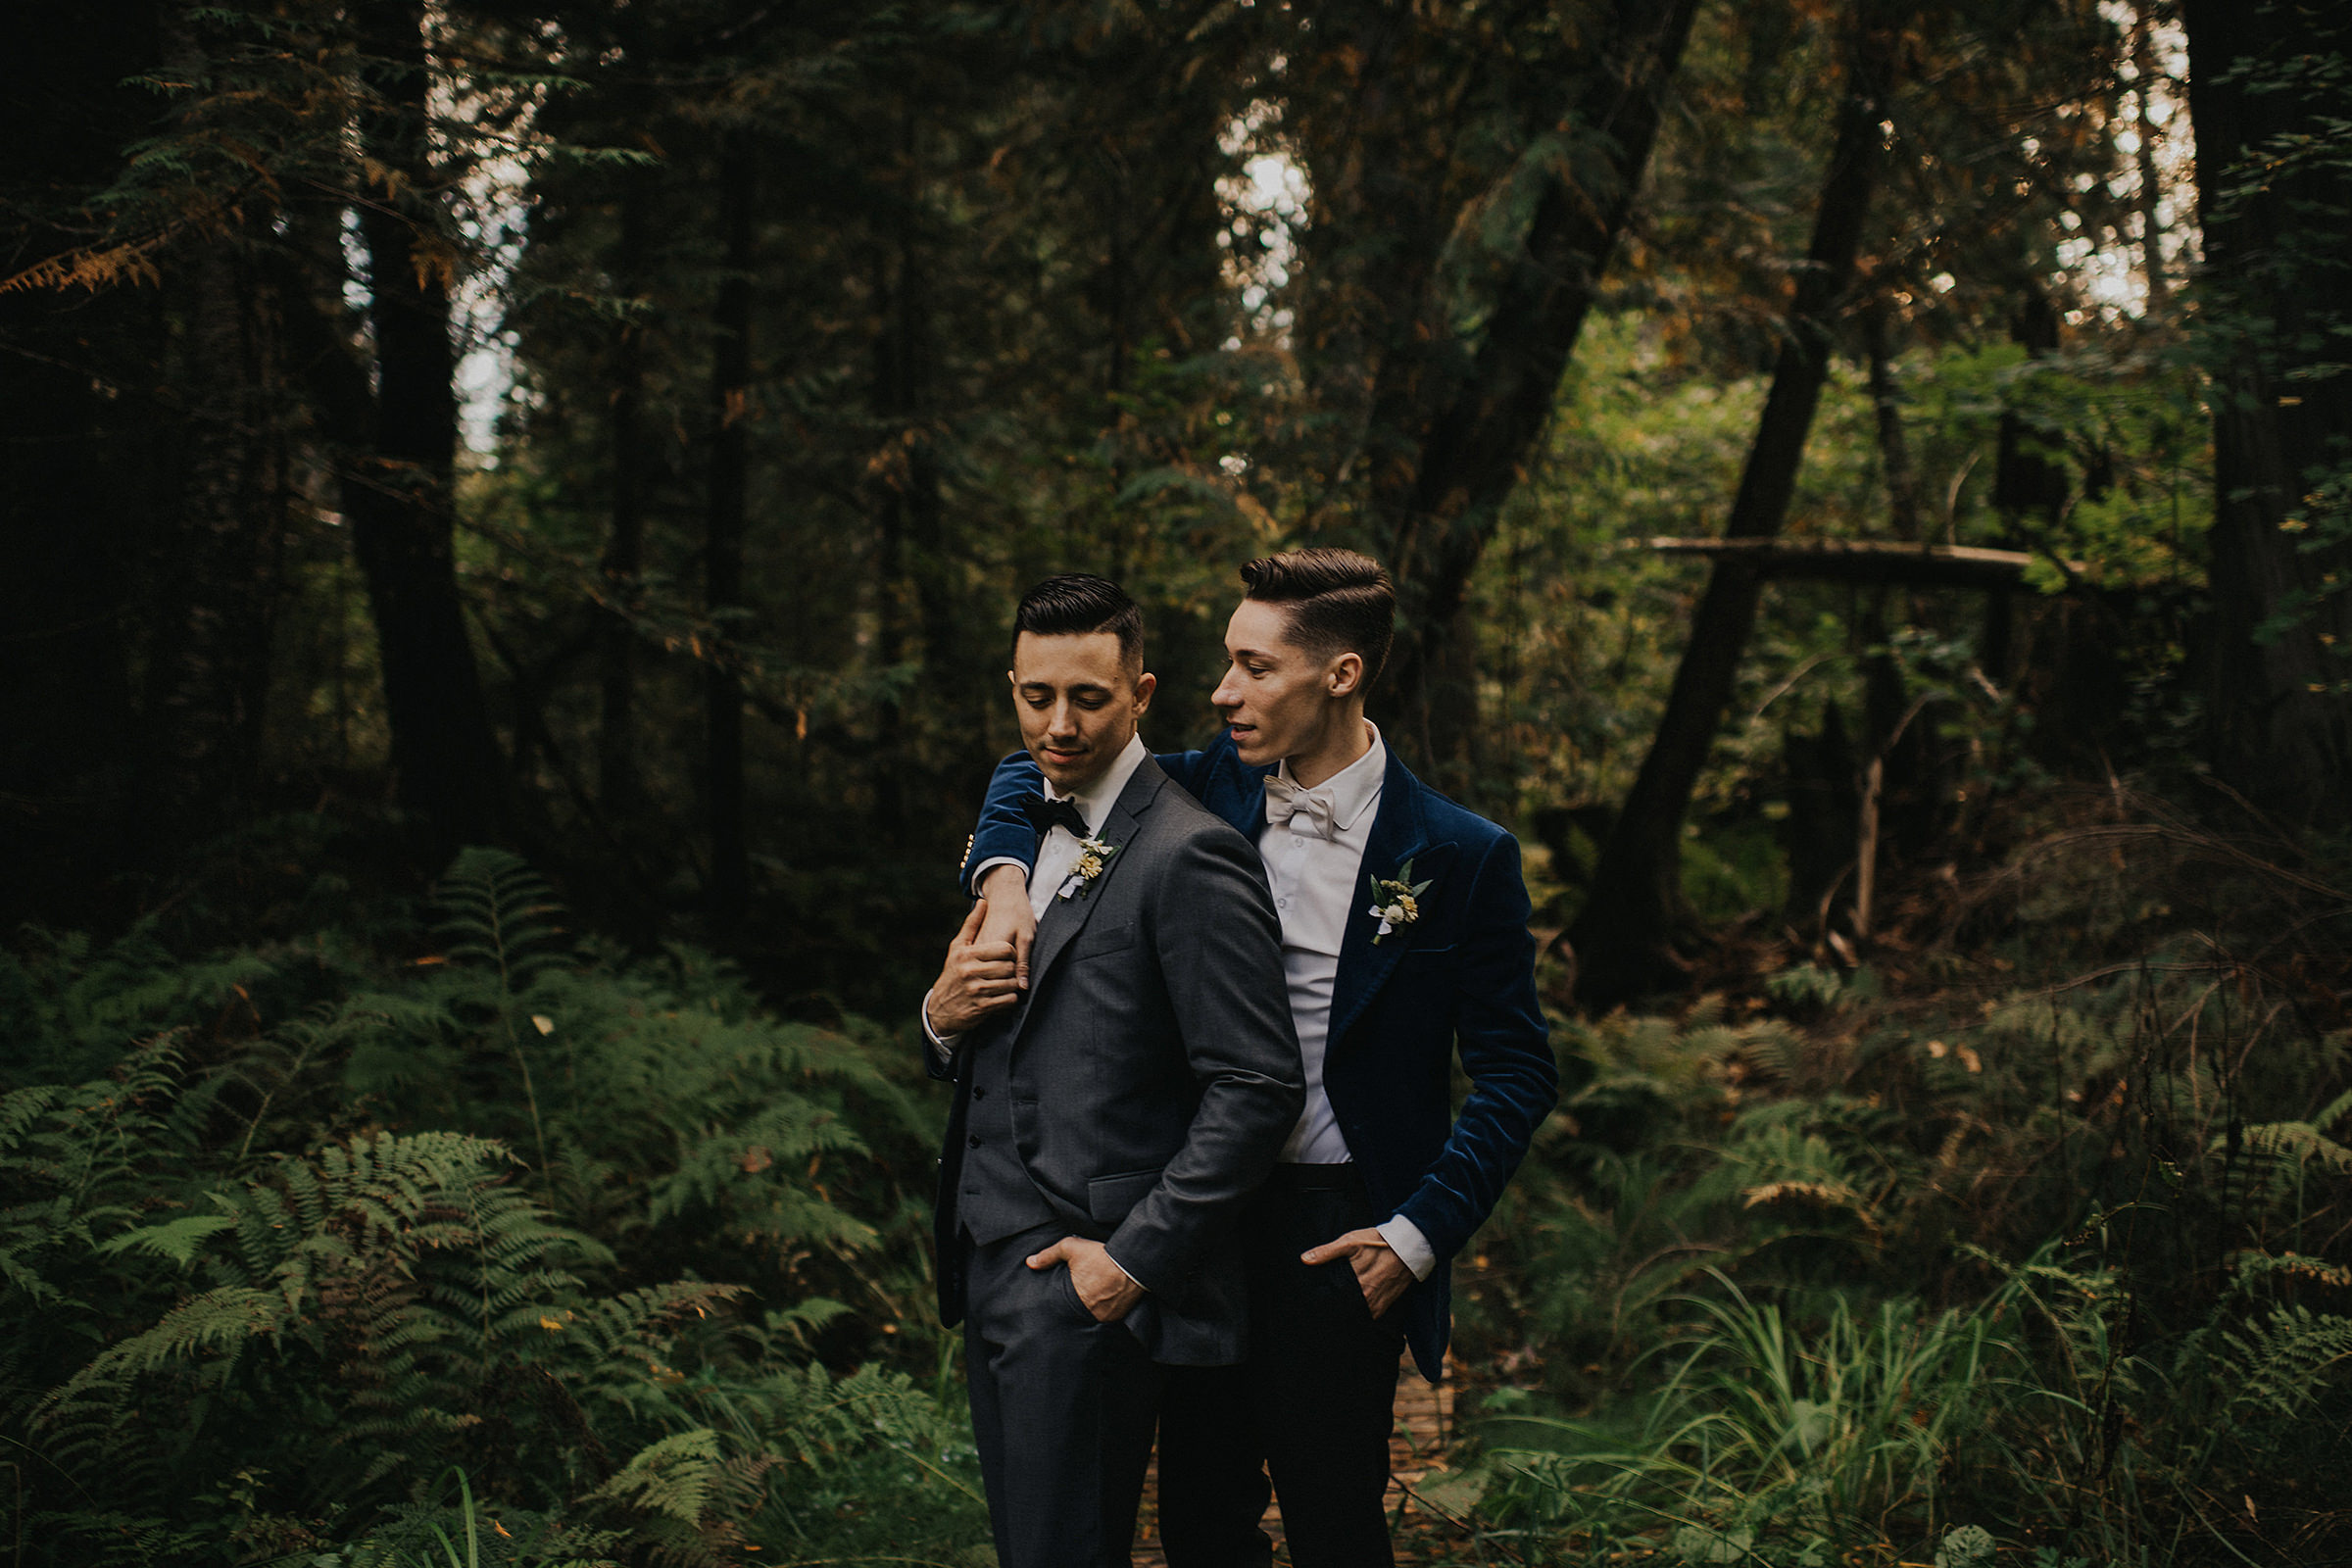 Same Sex Okanagan wedding couple in a lush forest